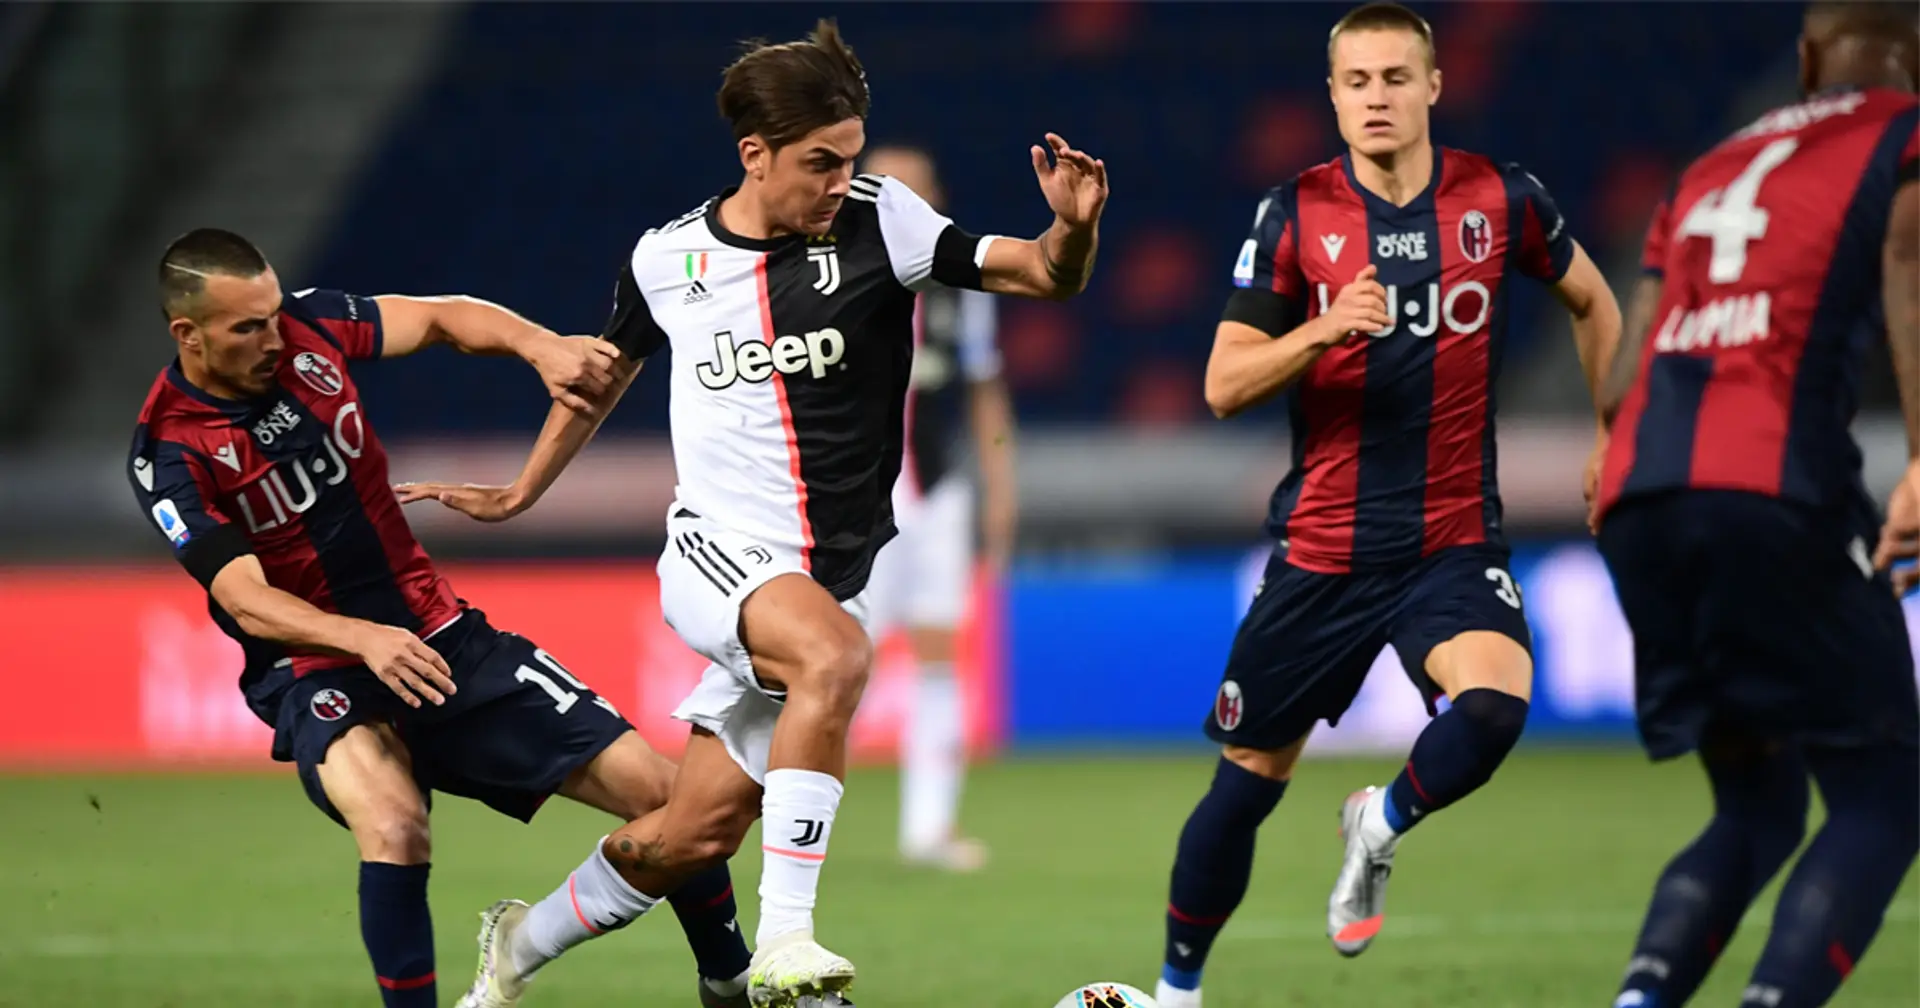 Una Juventus rediviva supera il Bologna e riparte con 3 punti in campionato : il match riassunto in 5 punti chiave